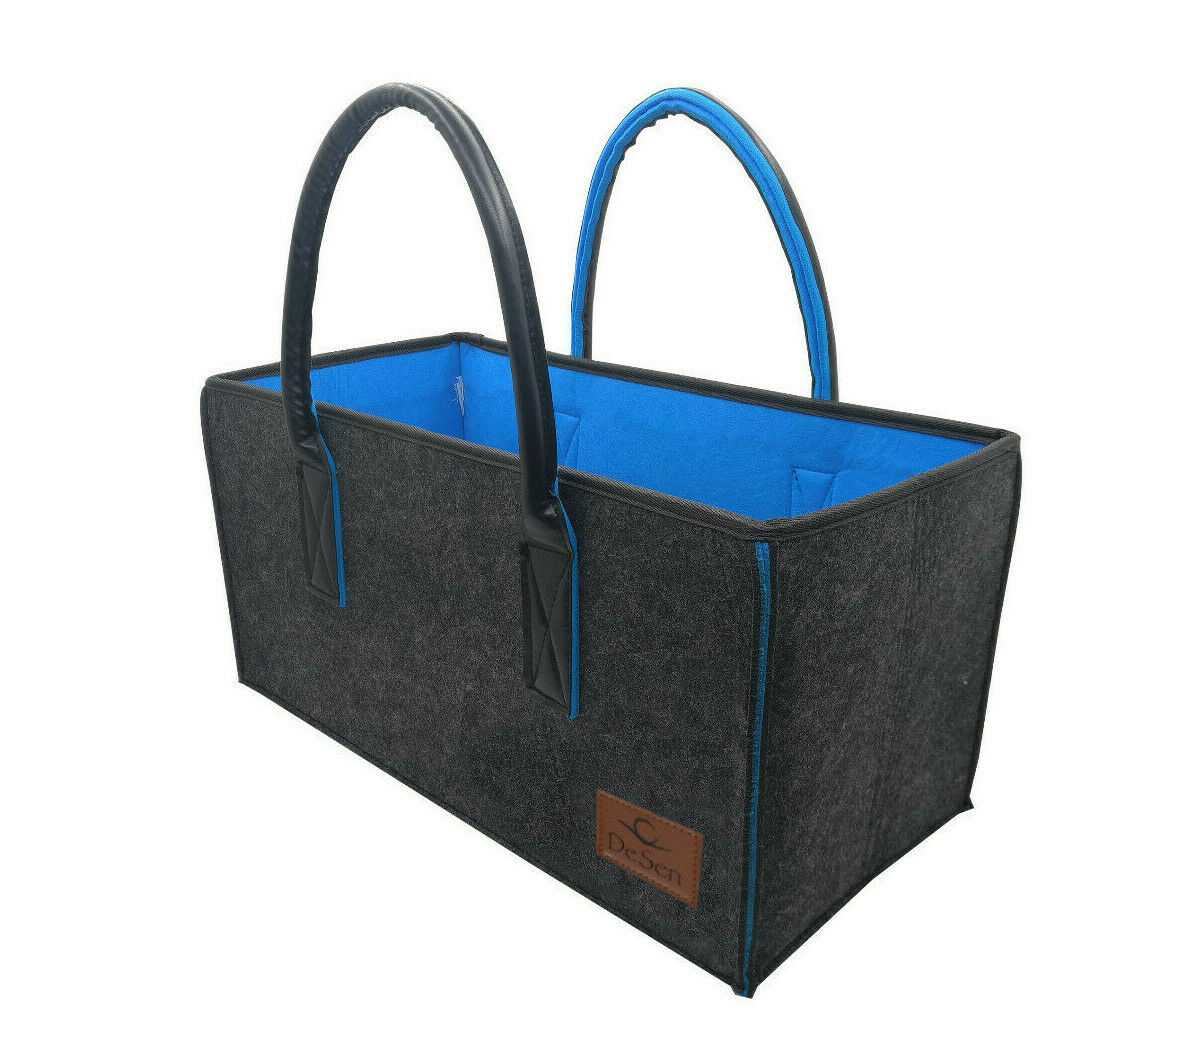 DeSen Deluxe Filztasche Hochwertige Einkaufstasche, Schicke Strandtasche, Henkeltasche, Zeitungskorb, Filzkorb, Einkaufskorb (Anthrazit/Blau-50 * 25 * 25cm)